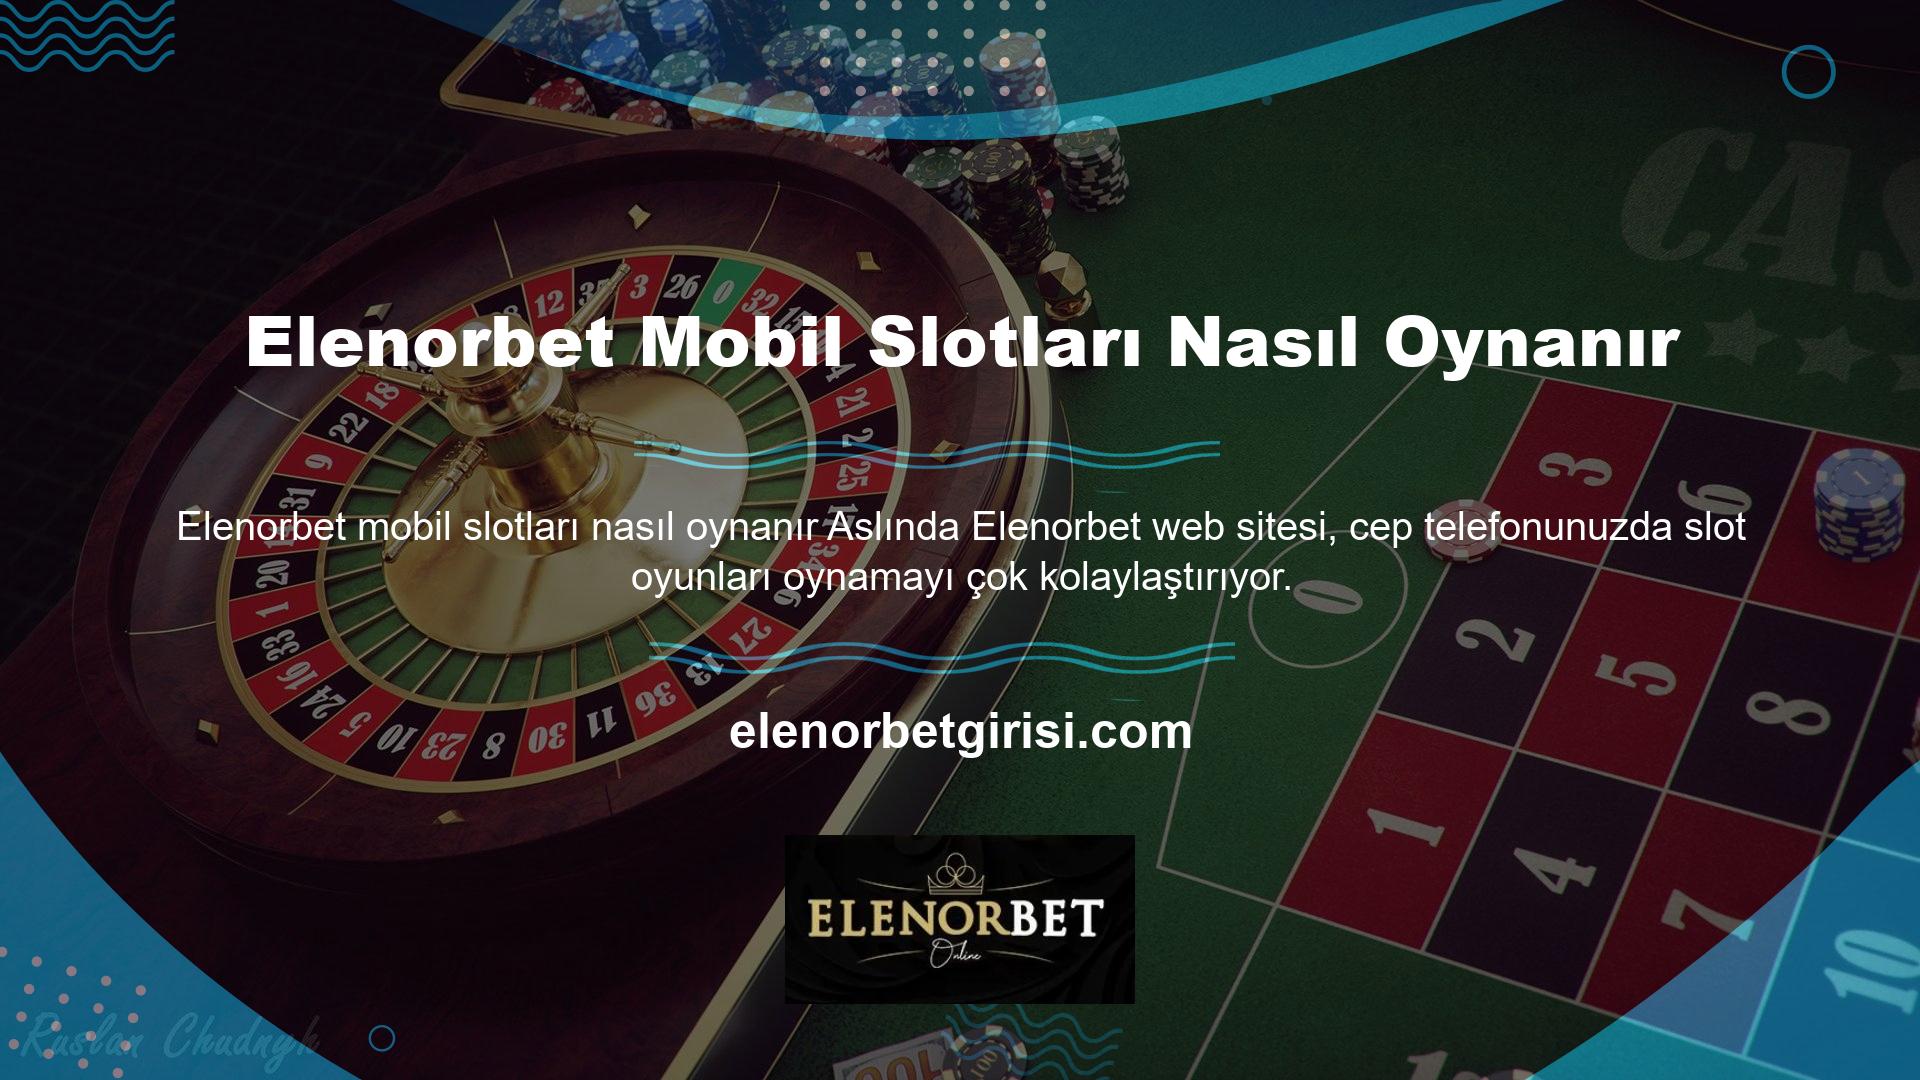 Elenorbet Mobil Slot oynamanın iki farklı yolu vardır